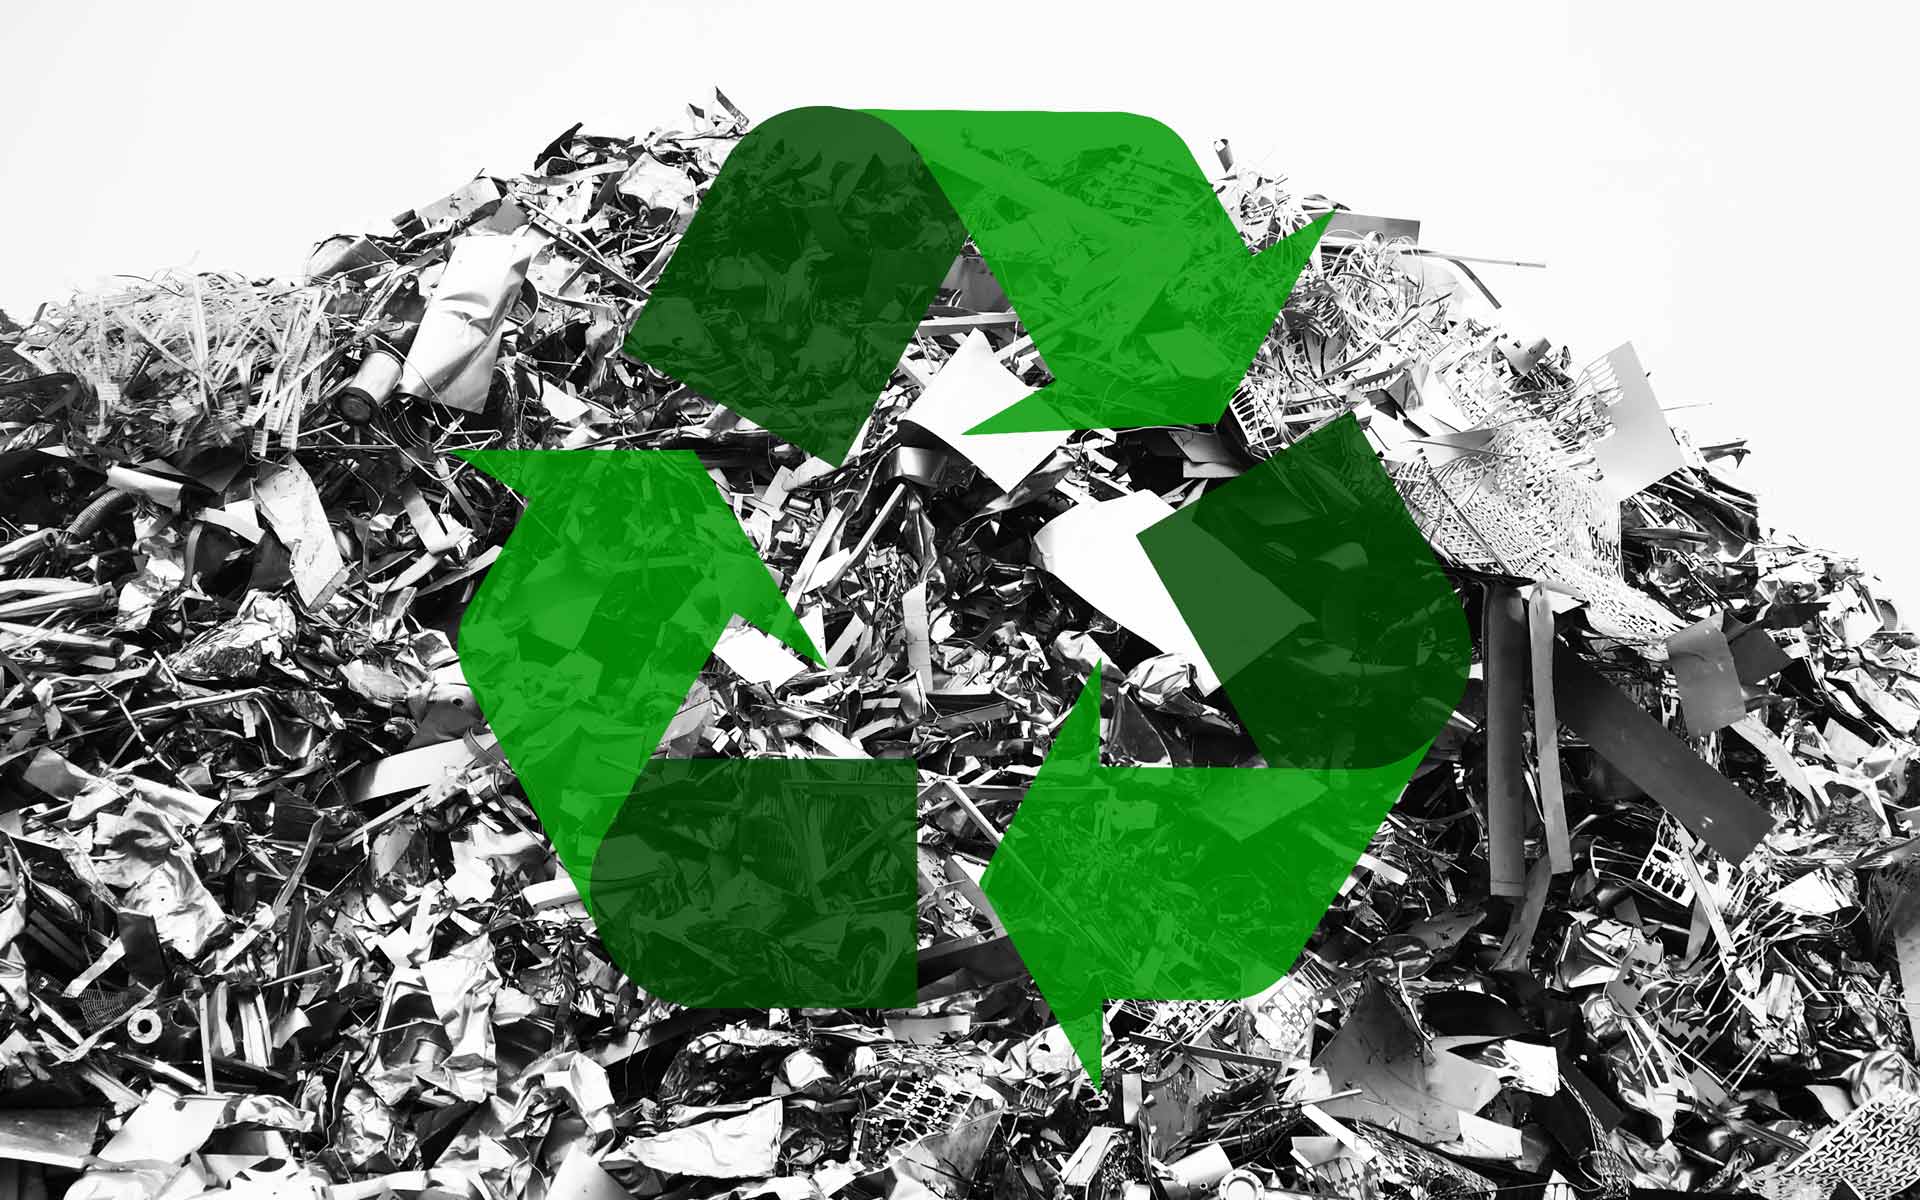 Tas de déchets ferreux avec le sigle recyclage vert par dessus